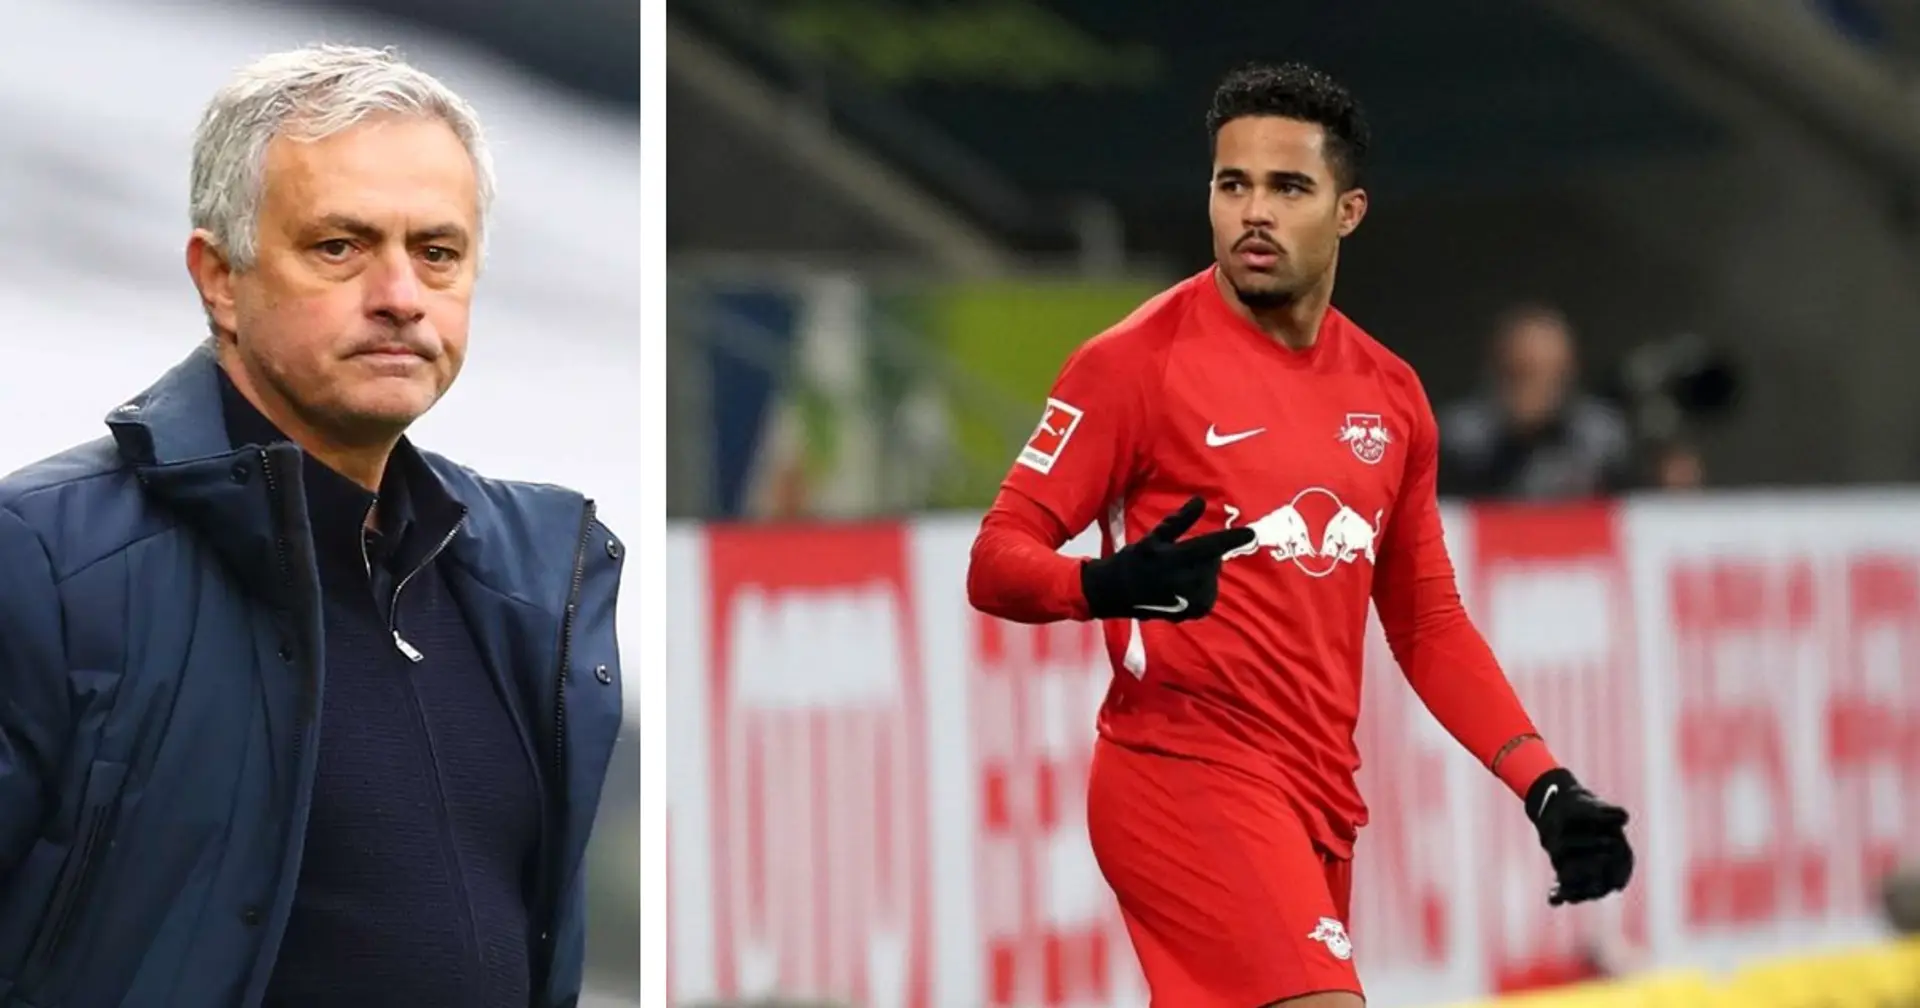 "Spero di rivedervi presto": Kluivert snobba Mourinho e dichiara il suo amore ai tifosi del Lipsia